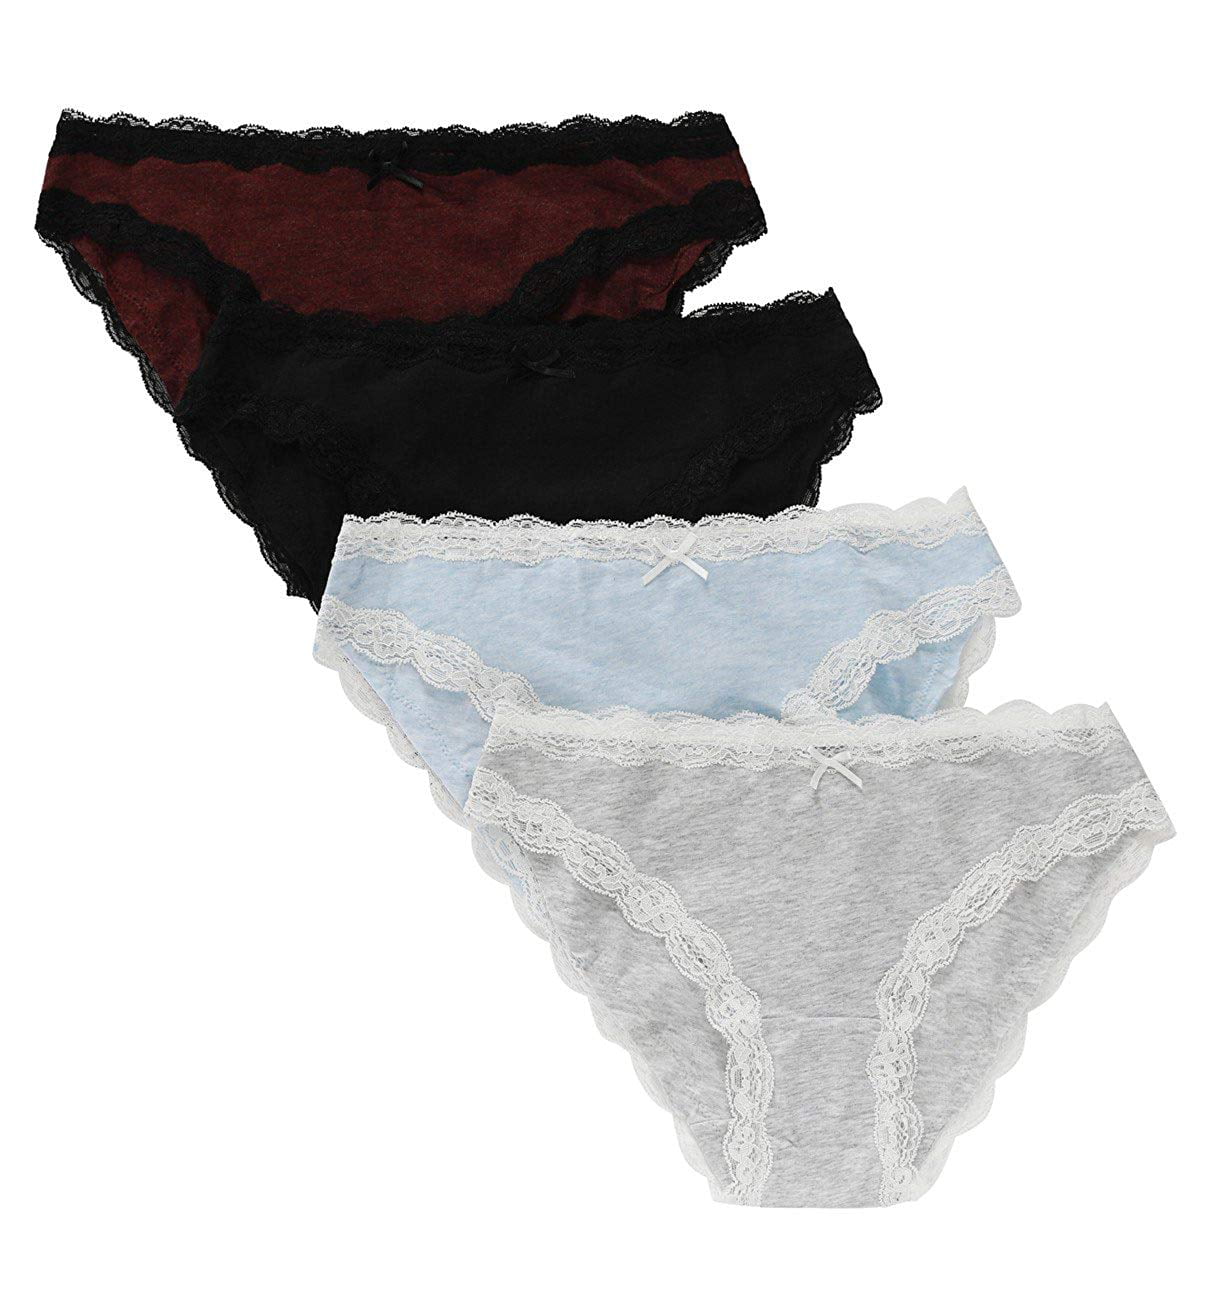 Seamless Briefs Cotton Women Underwear Lace Trim Panties 4 Colors Size L 